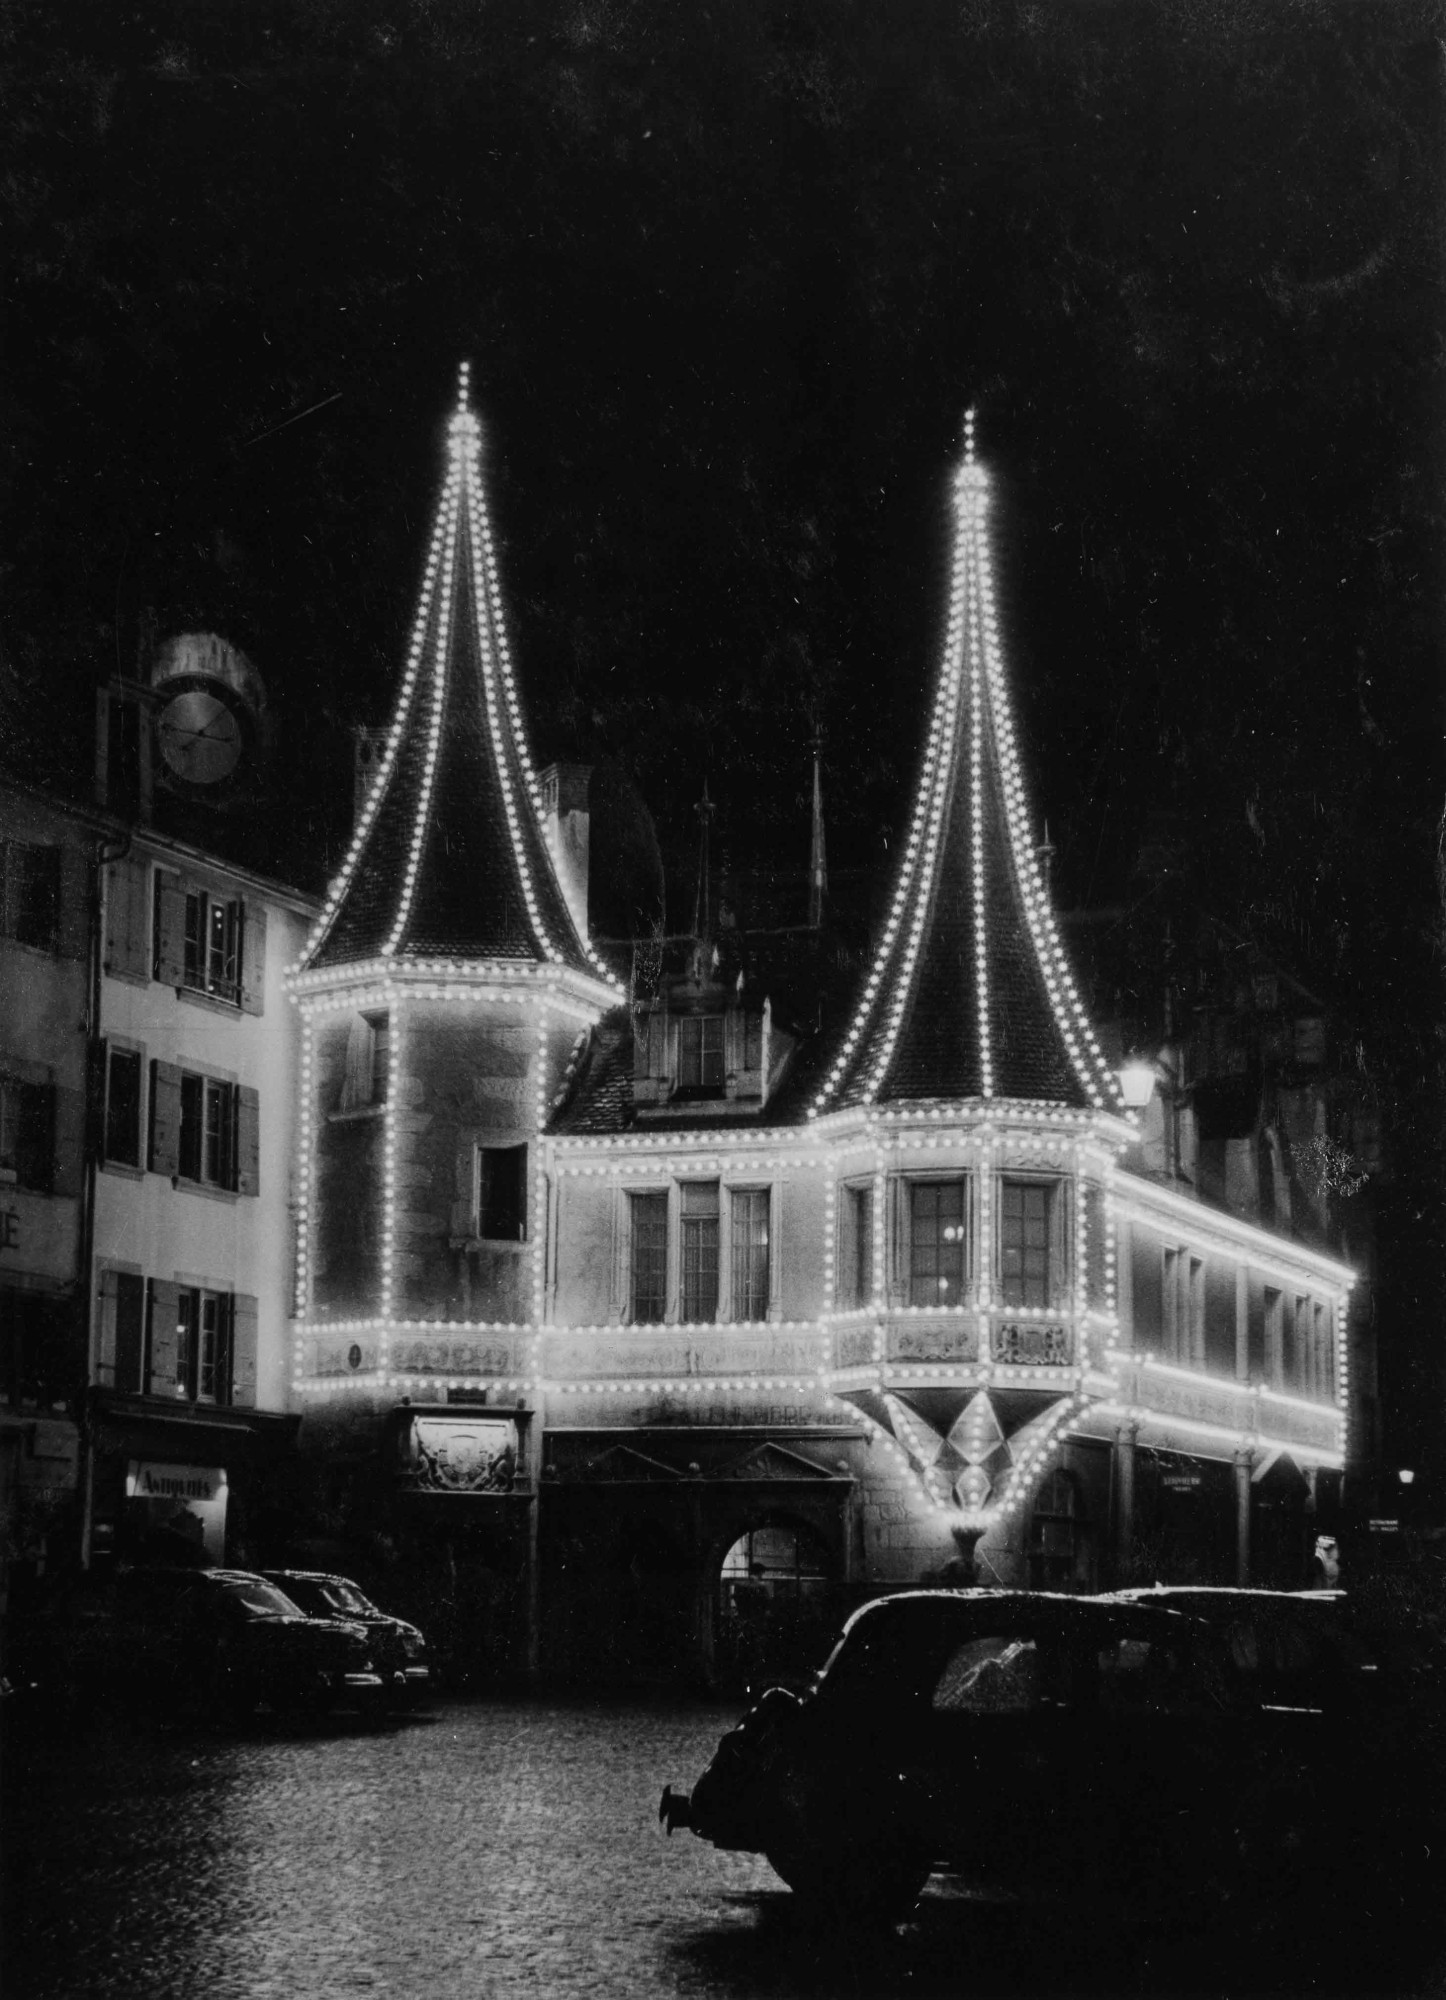 Dans le cadre de la nouvelle exposition temporaire consacrée à l’histoire de l’éclairage urbain, les rues de Neuchâtel seront également illuminées par Fiat lux.